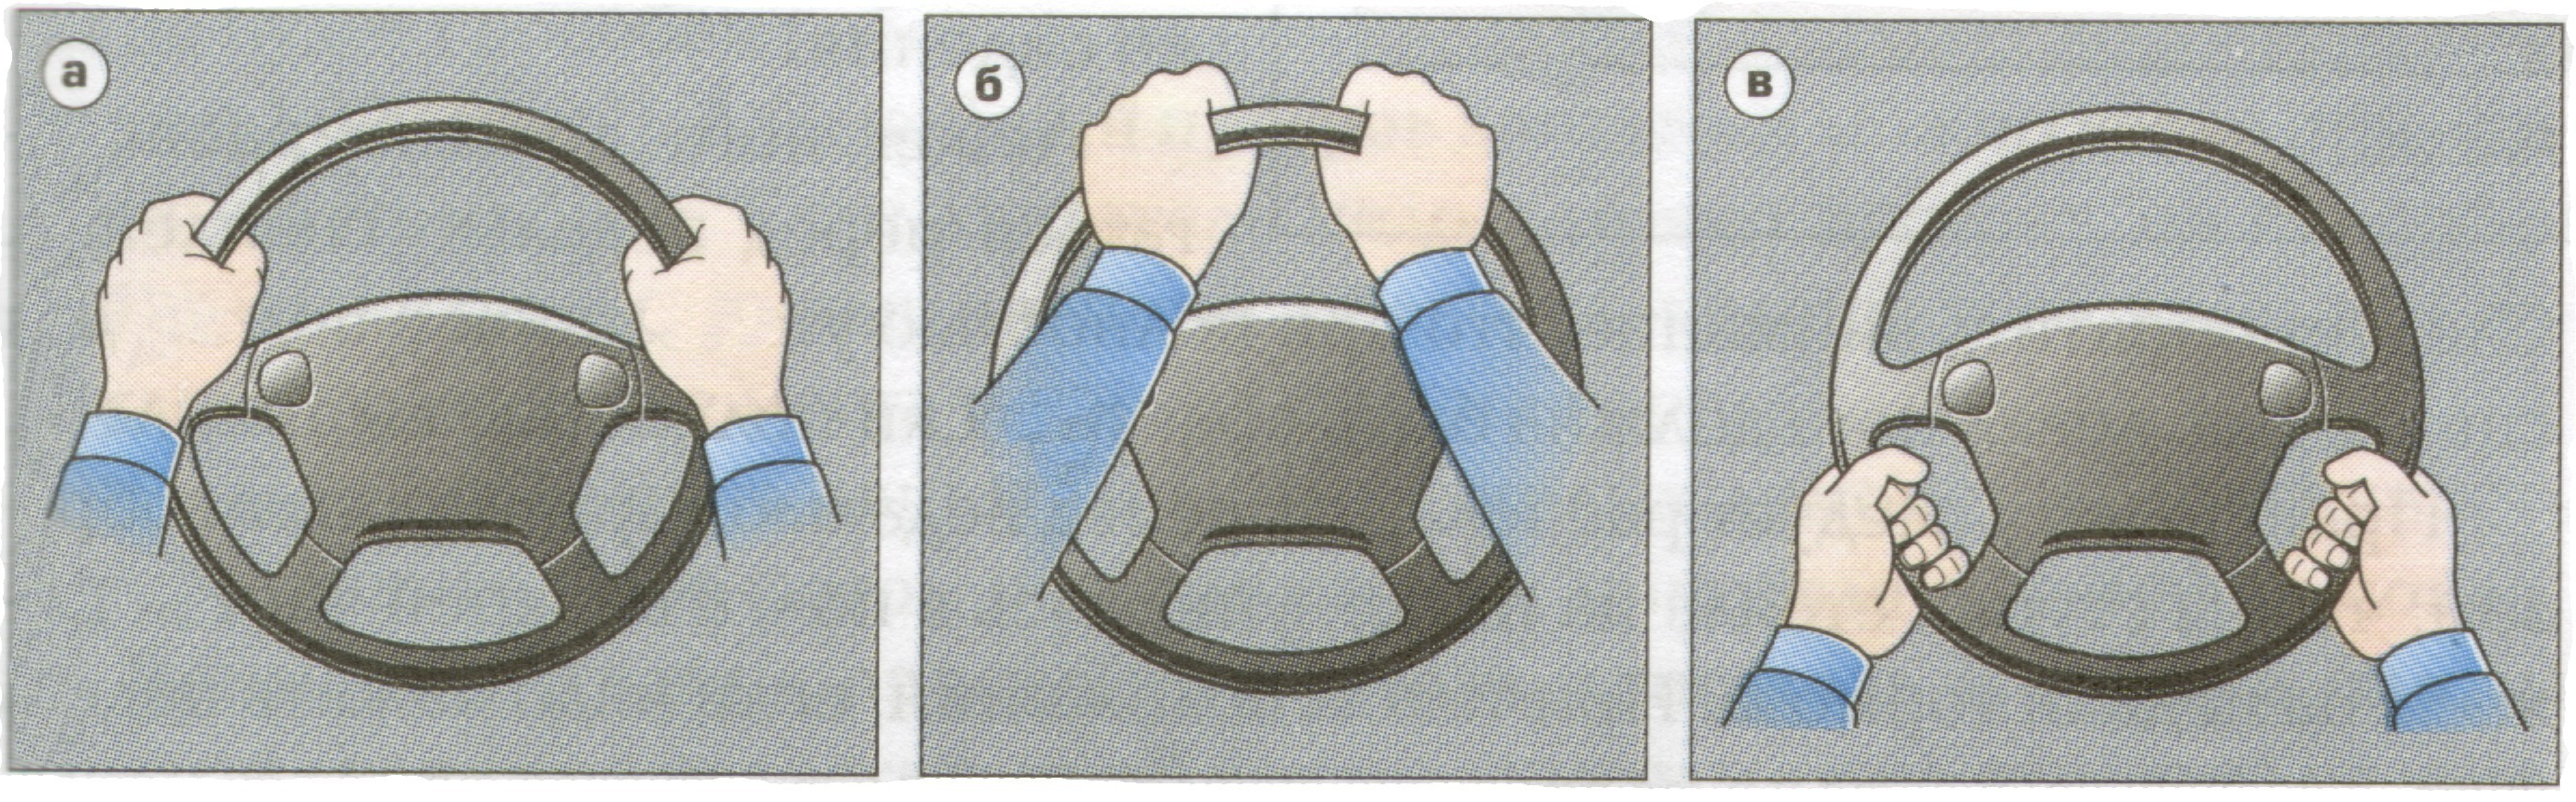 Советы водителю: как сидеть за рулем